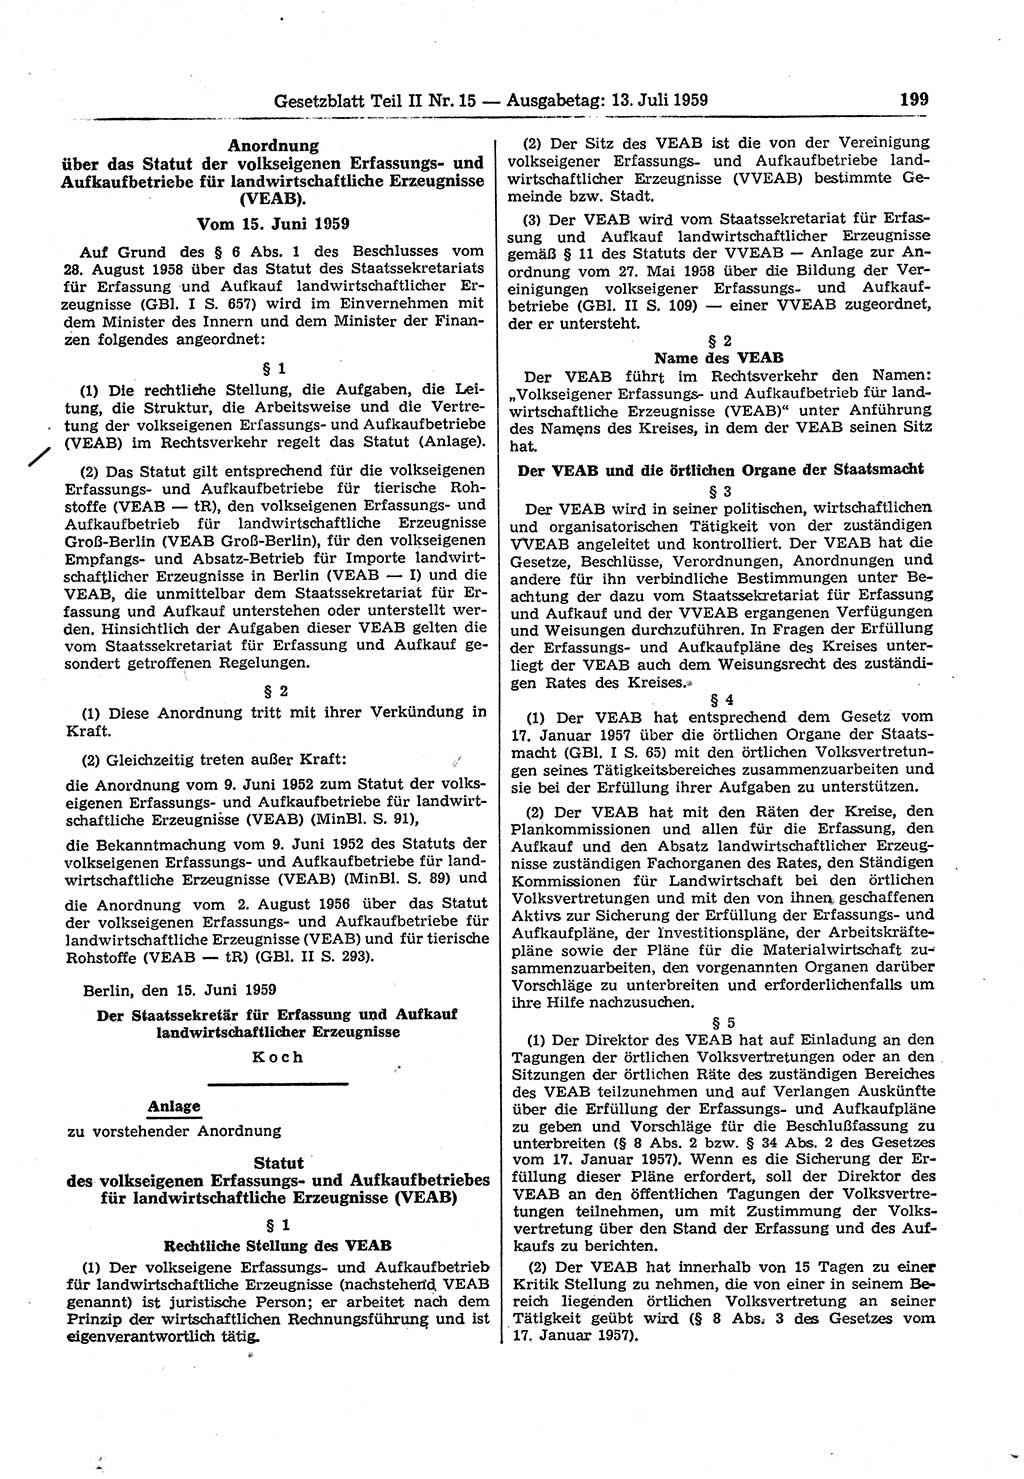 Gesetzblatt (GBl.) der Deutschen Demokratischen Republik (DDR) Teil ⅠⅠ 1959, Seite 199 (GBl. DDR ⅠⅠ 1959, S. 199)